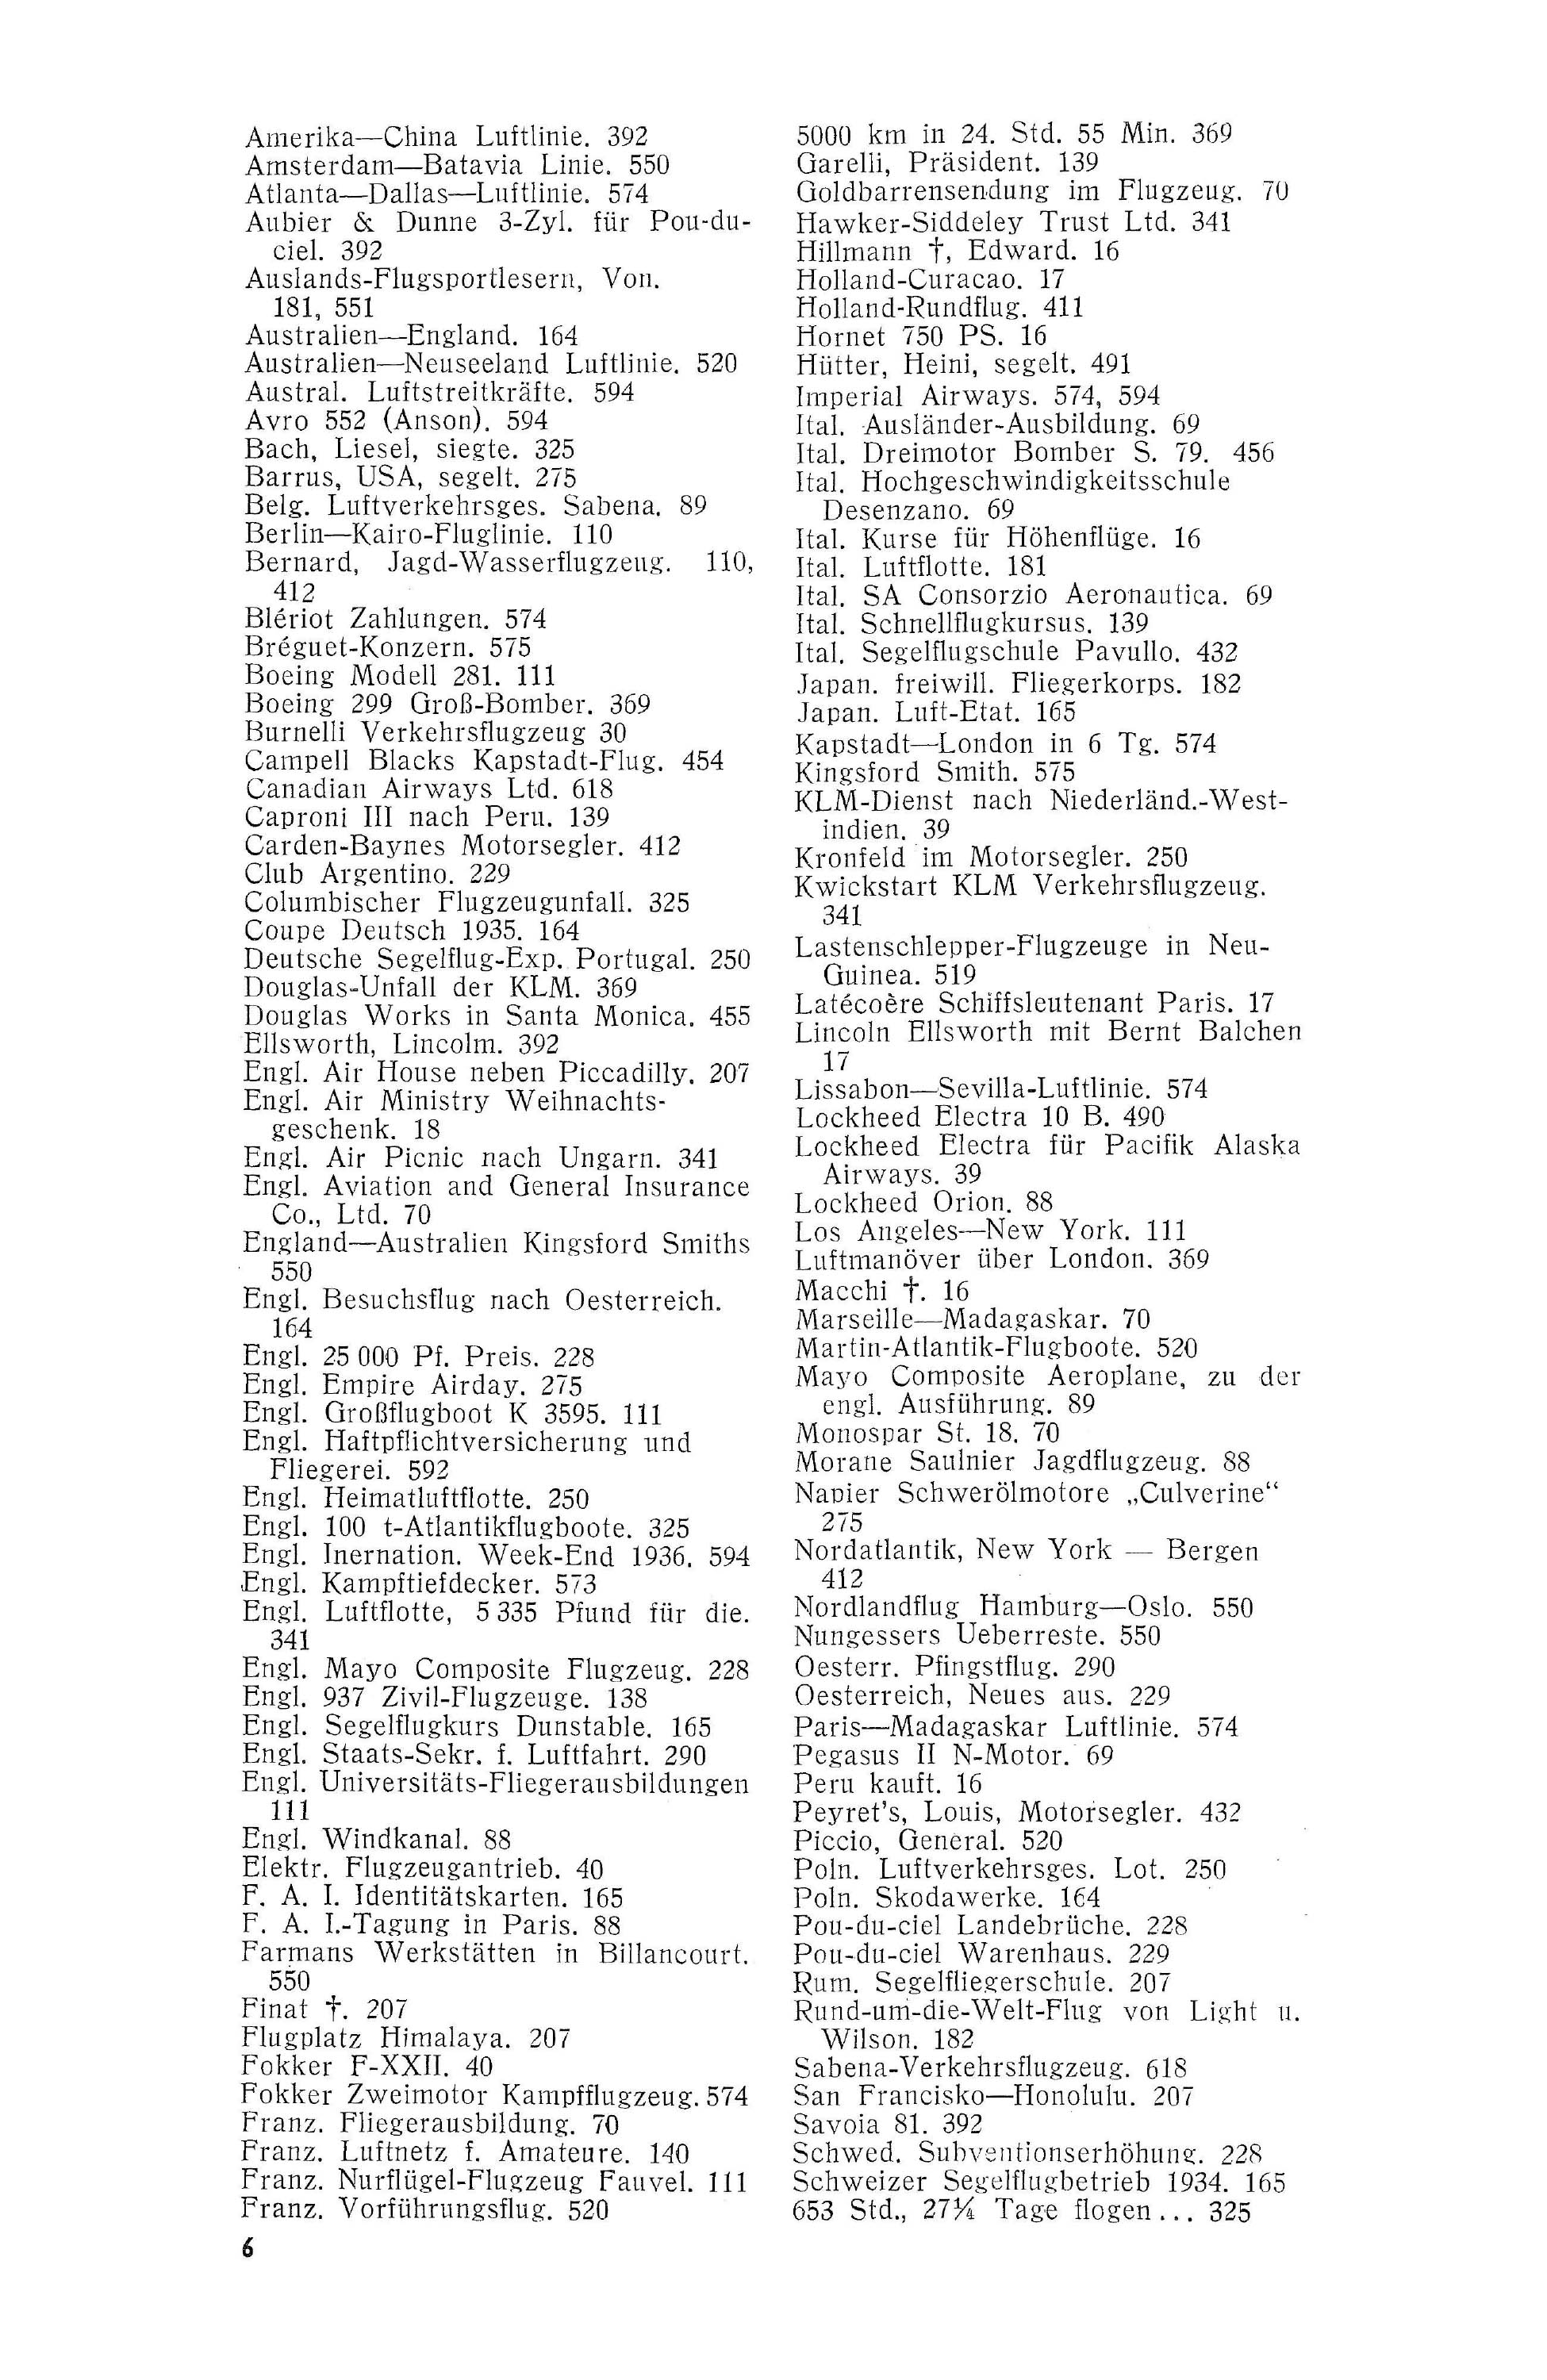 Sachregister und Inhaltsverzeichnis der Zeitschrift Flugsport 1935